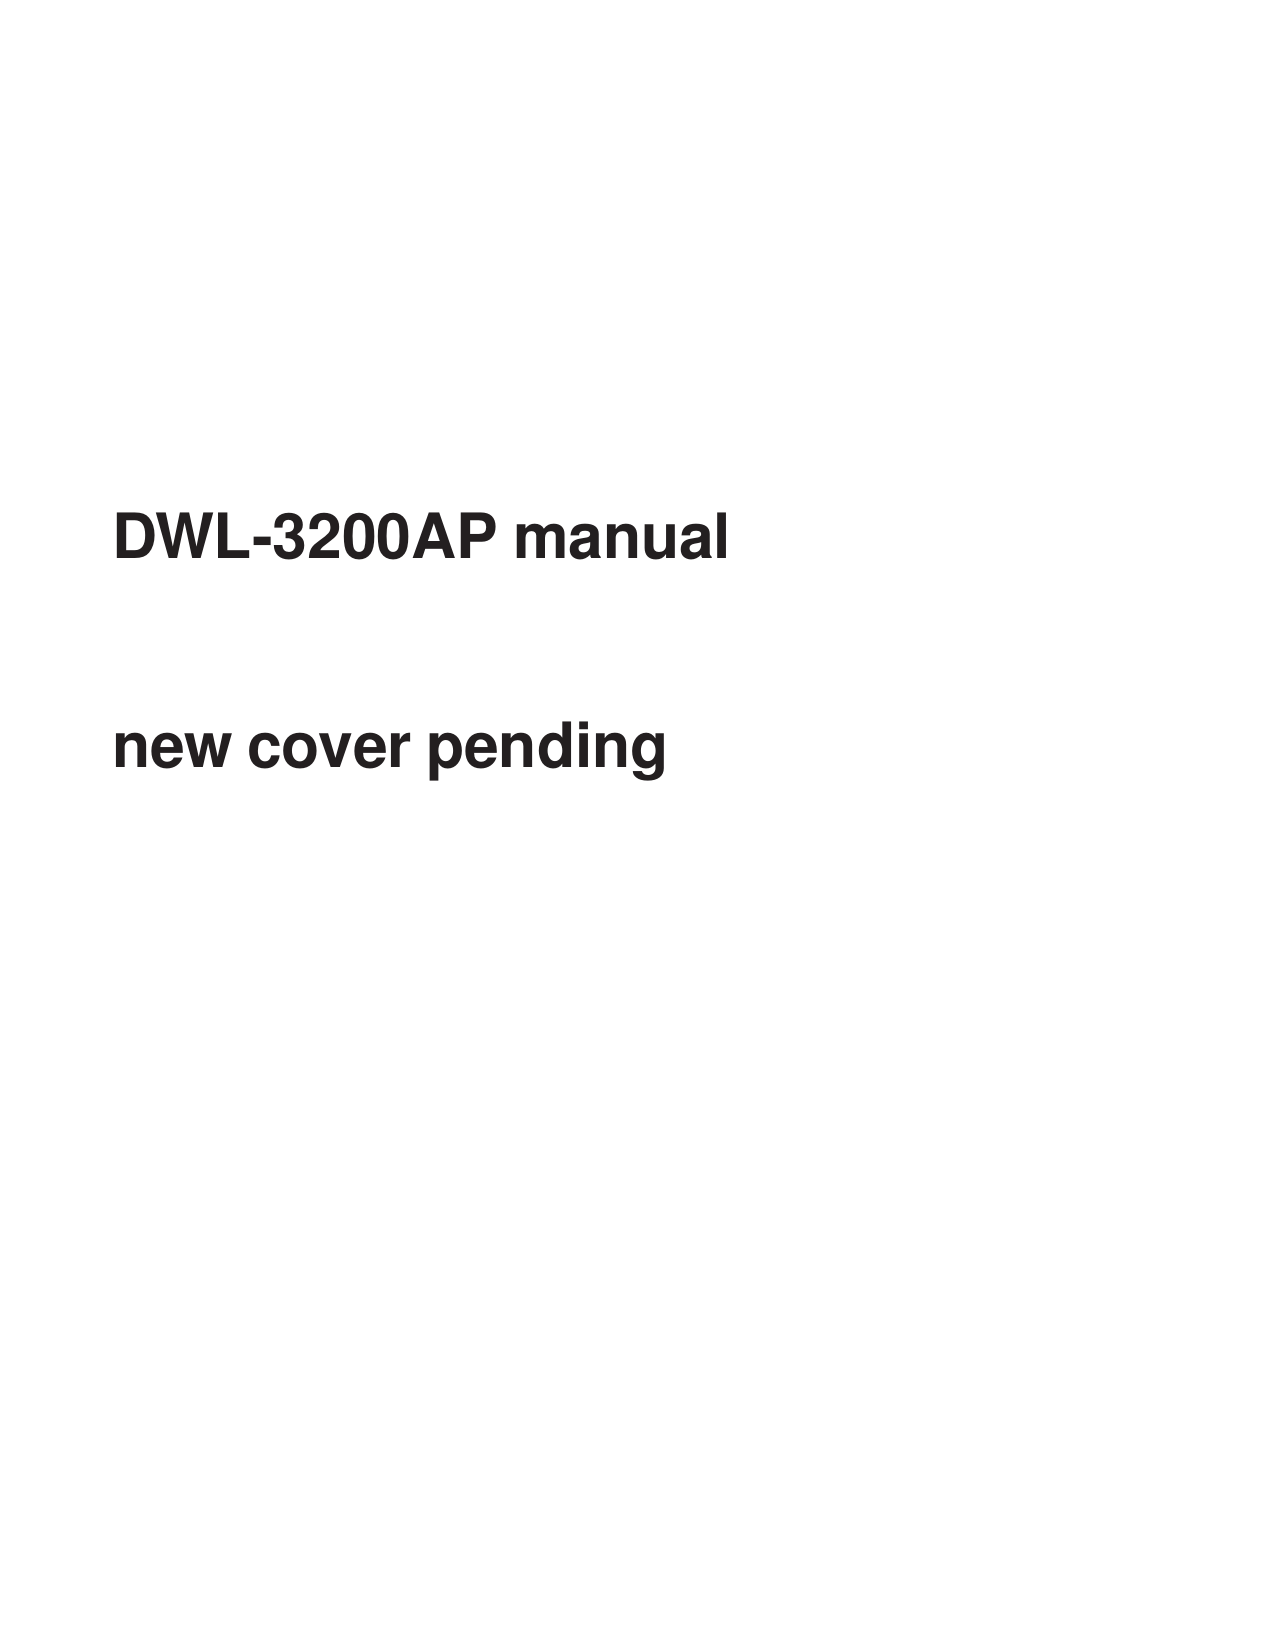 DWL-3200AP manualnew cover pending